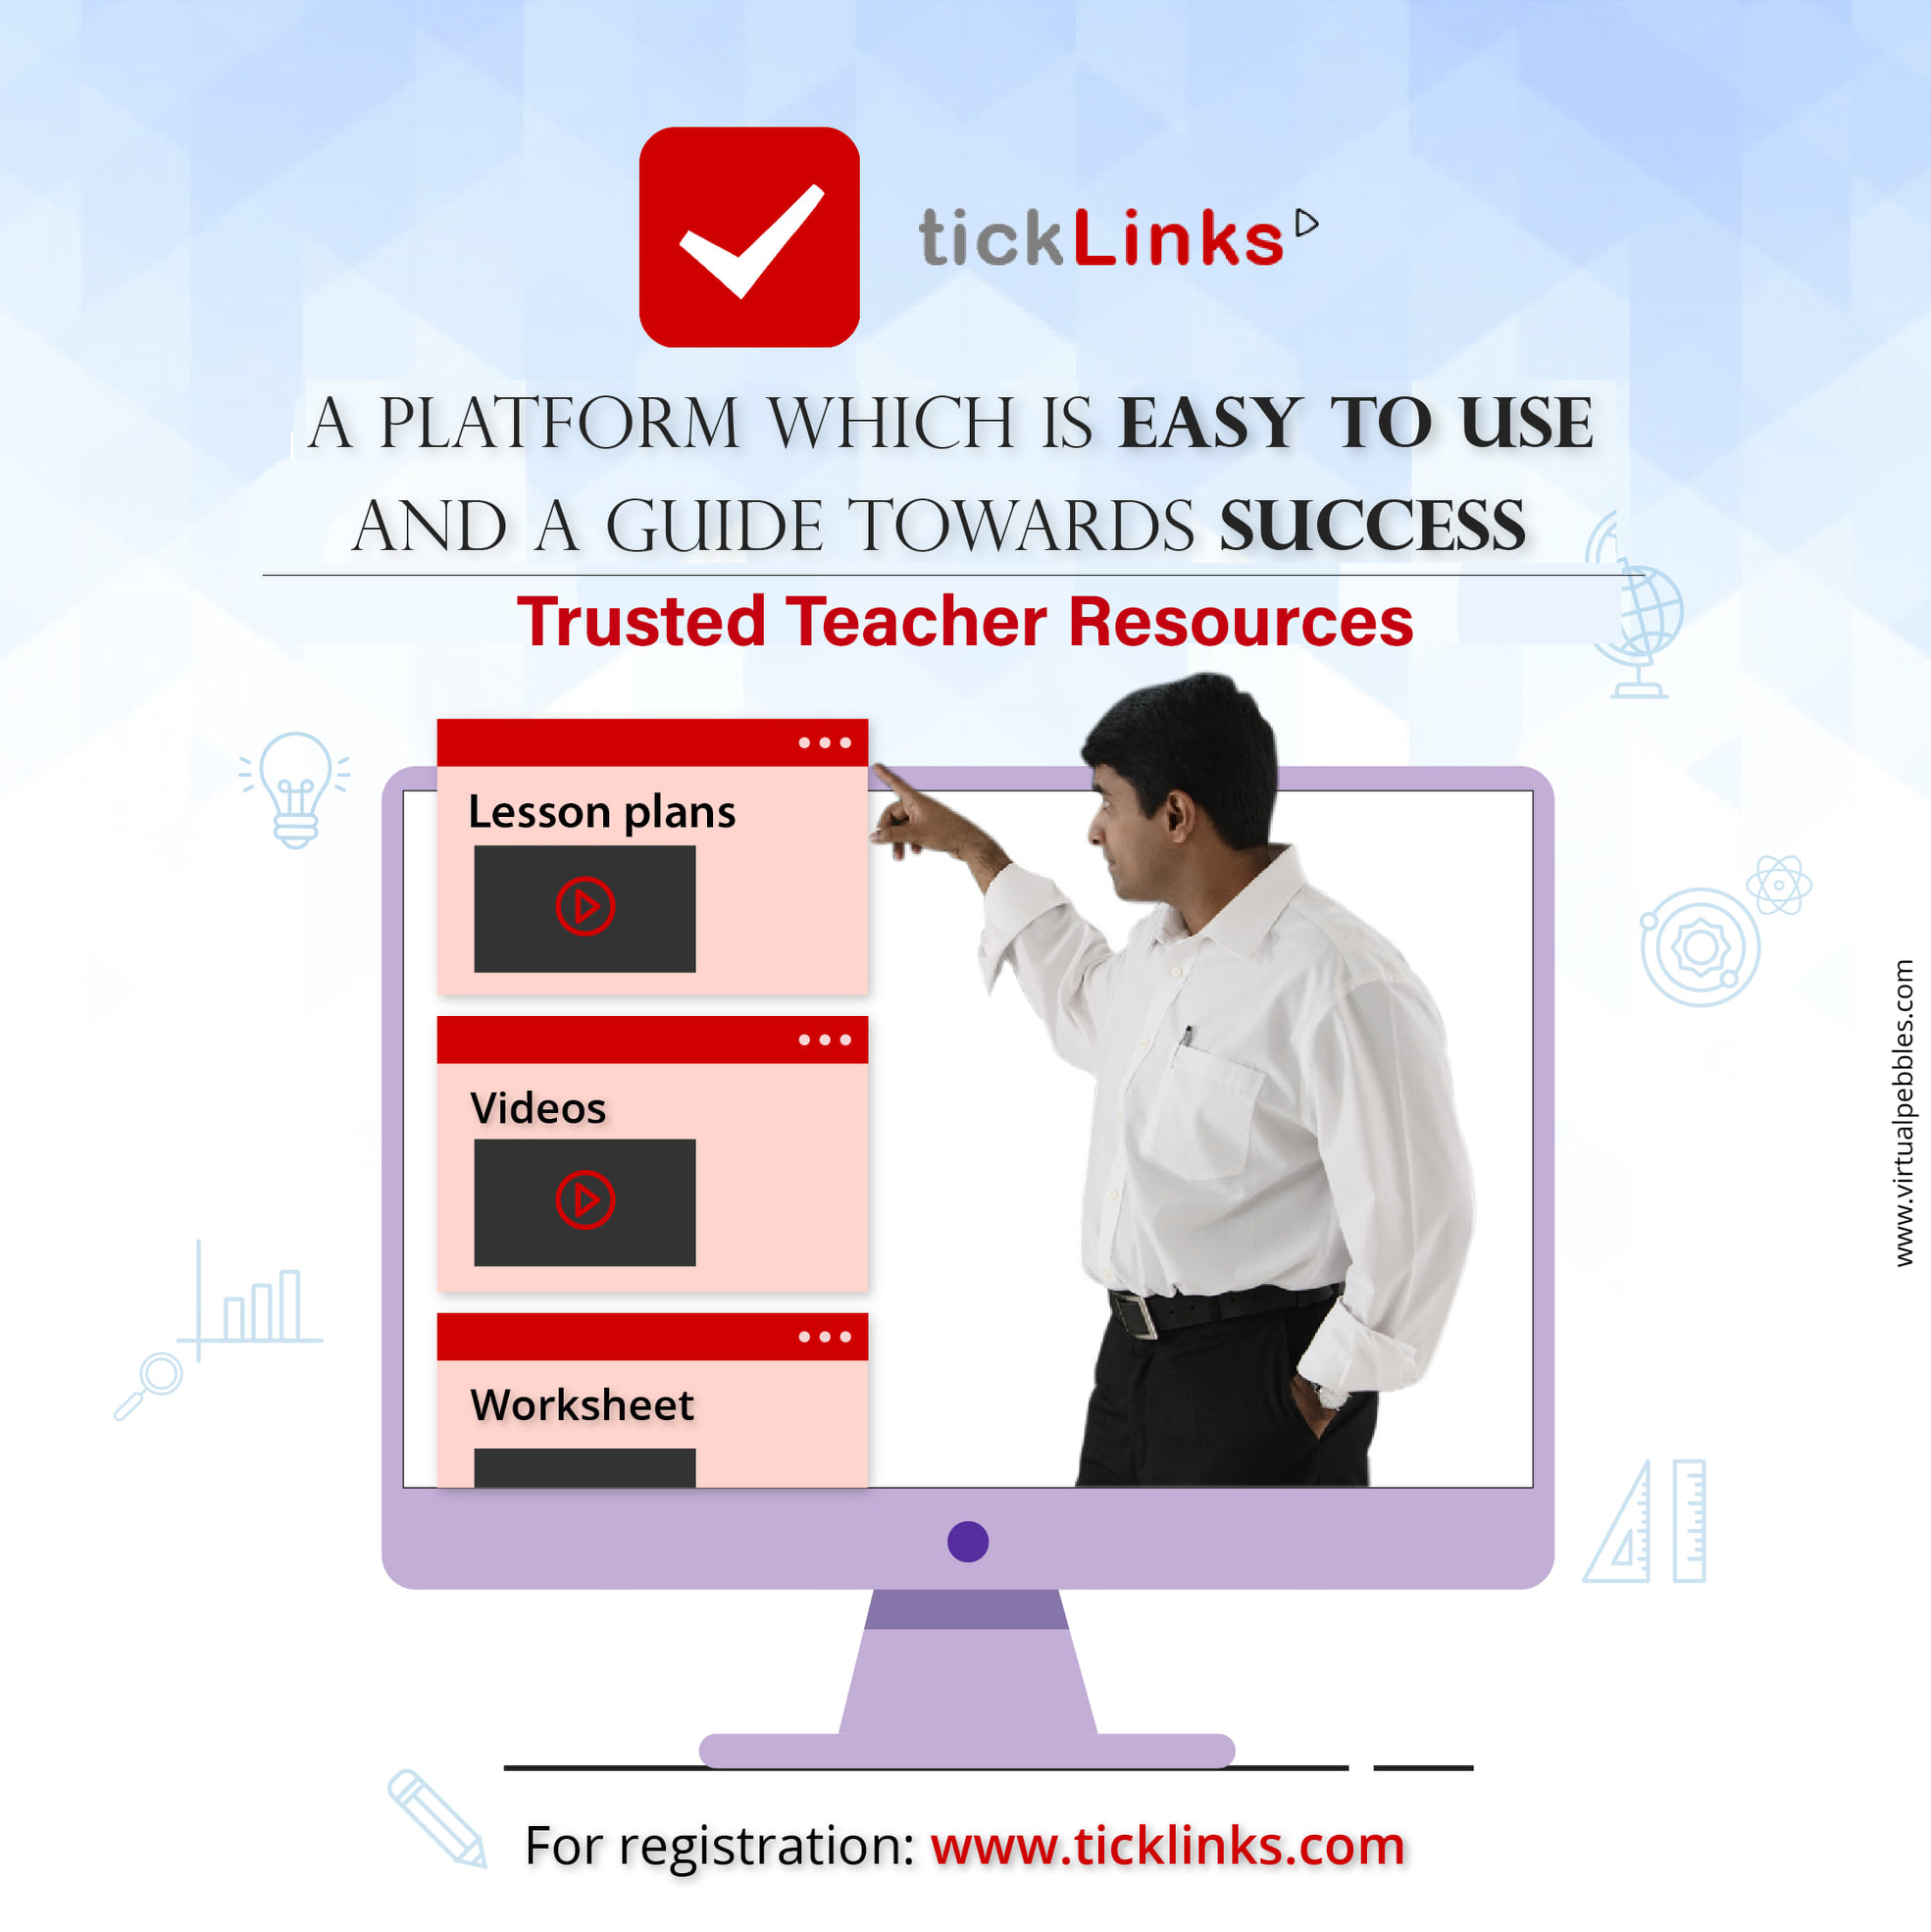 everest kenbridge school partnering with tickLinks - best online teaching tools